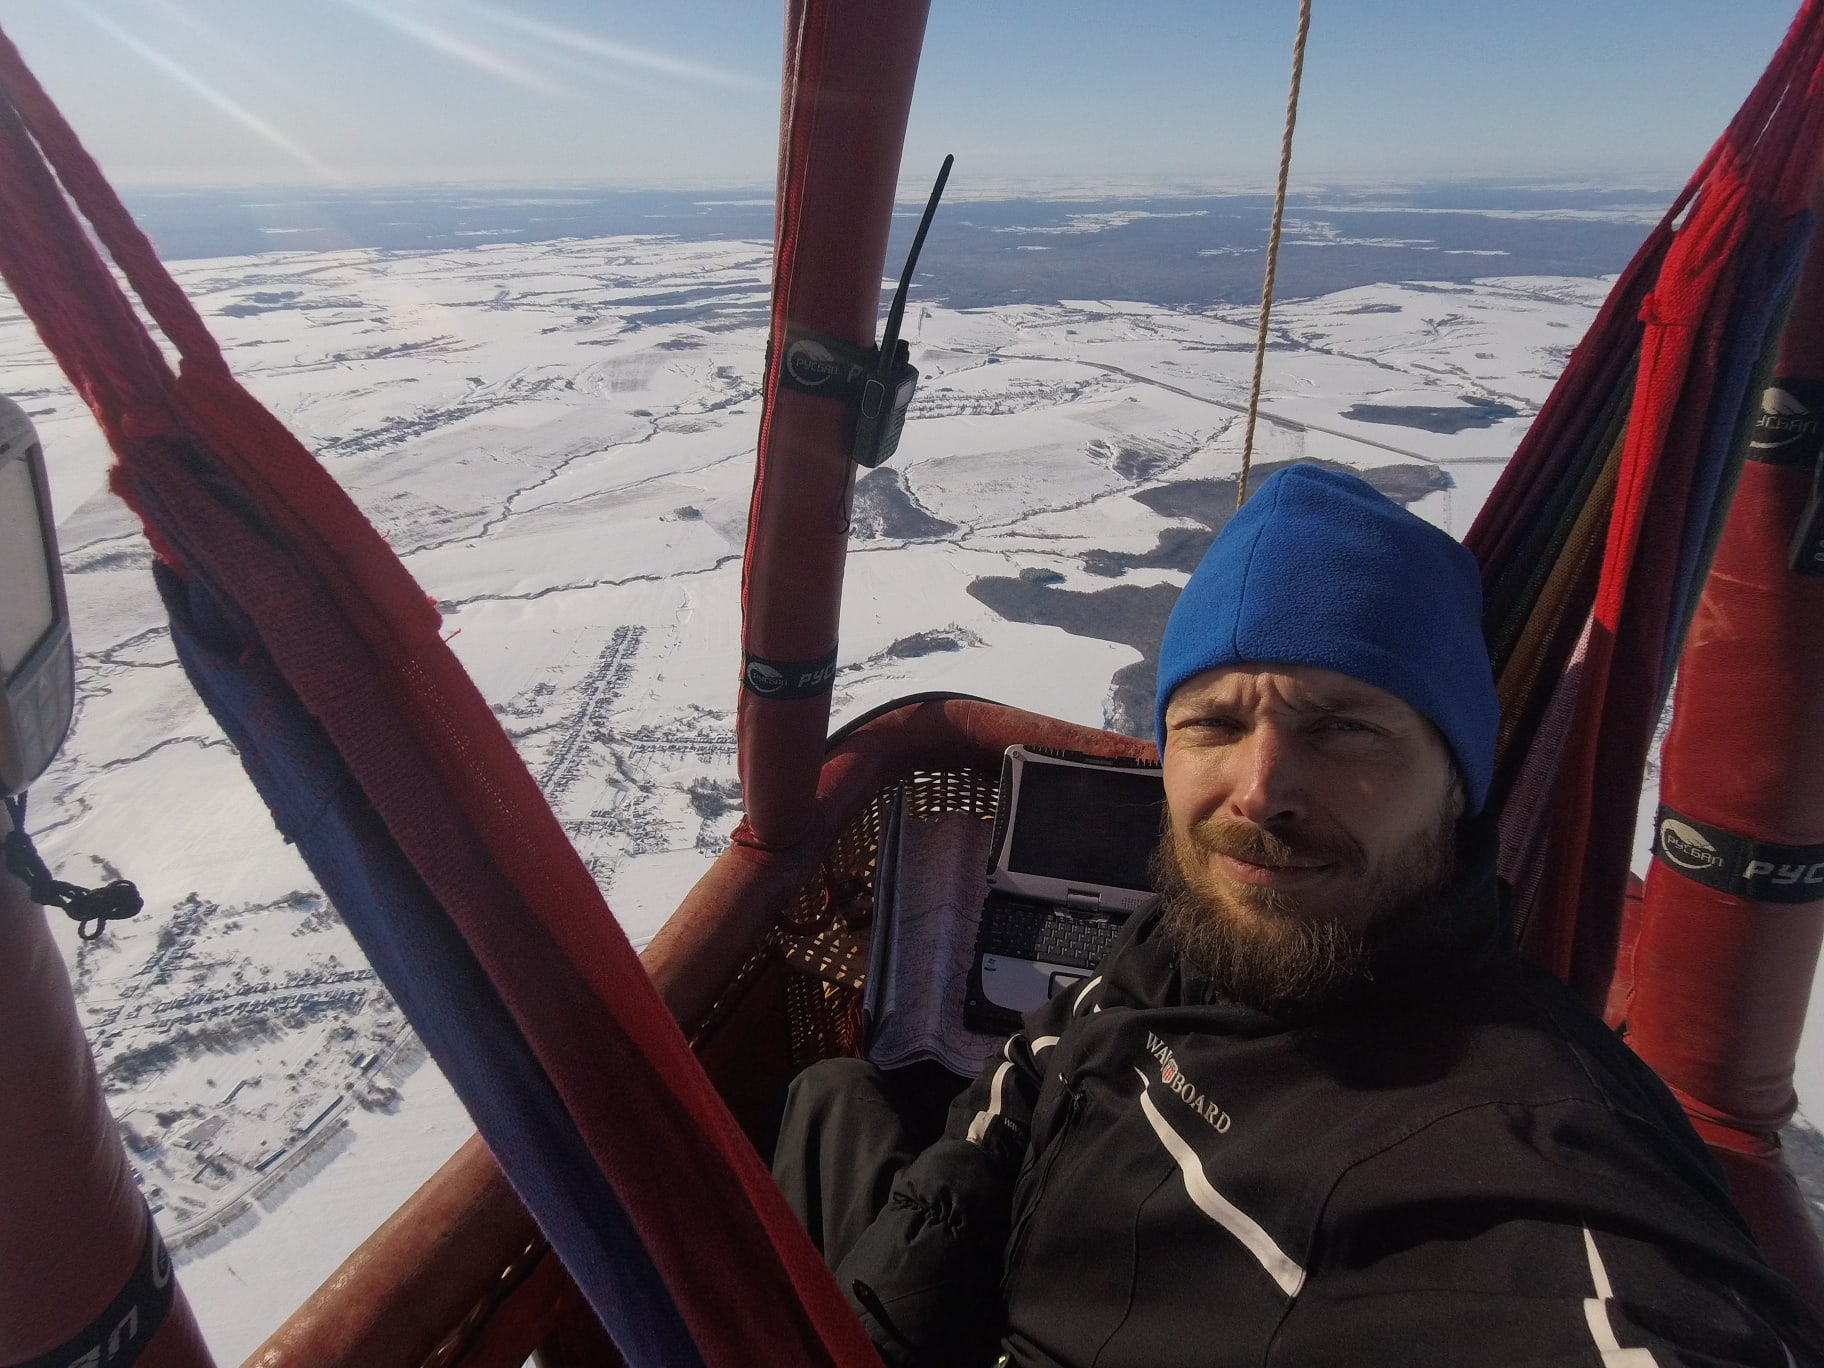 Пилот из Йошкар-Олы собирается пролететь 550 километров на воздушном шаре